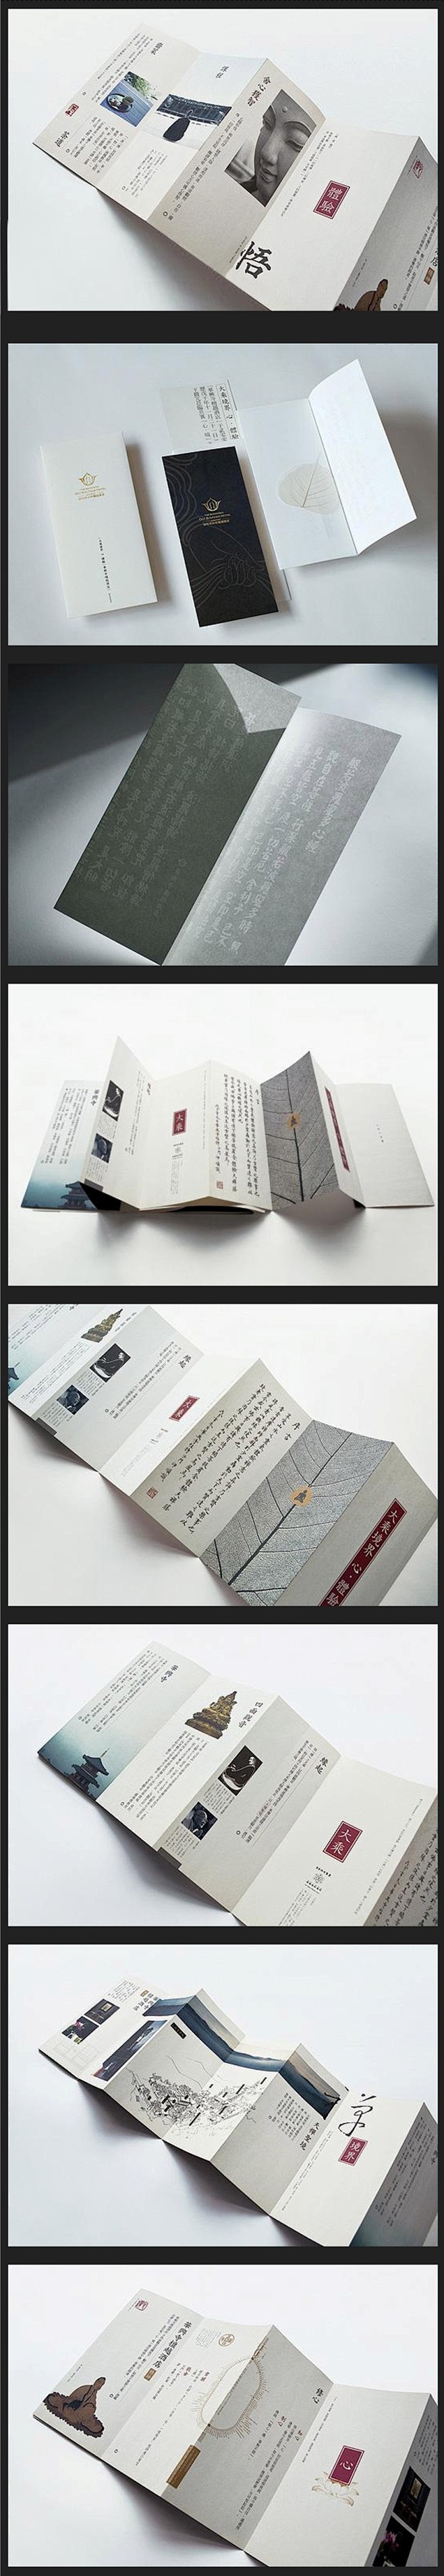 禅茶-折页设计 - 中国平面设计网